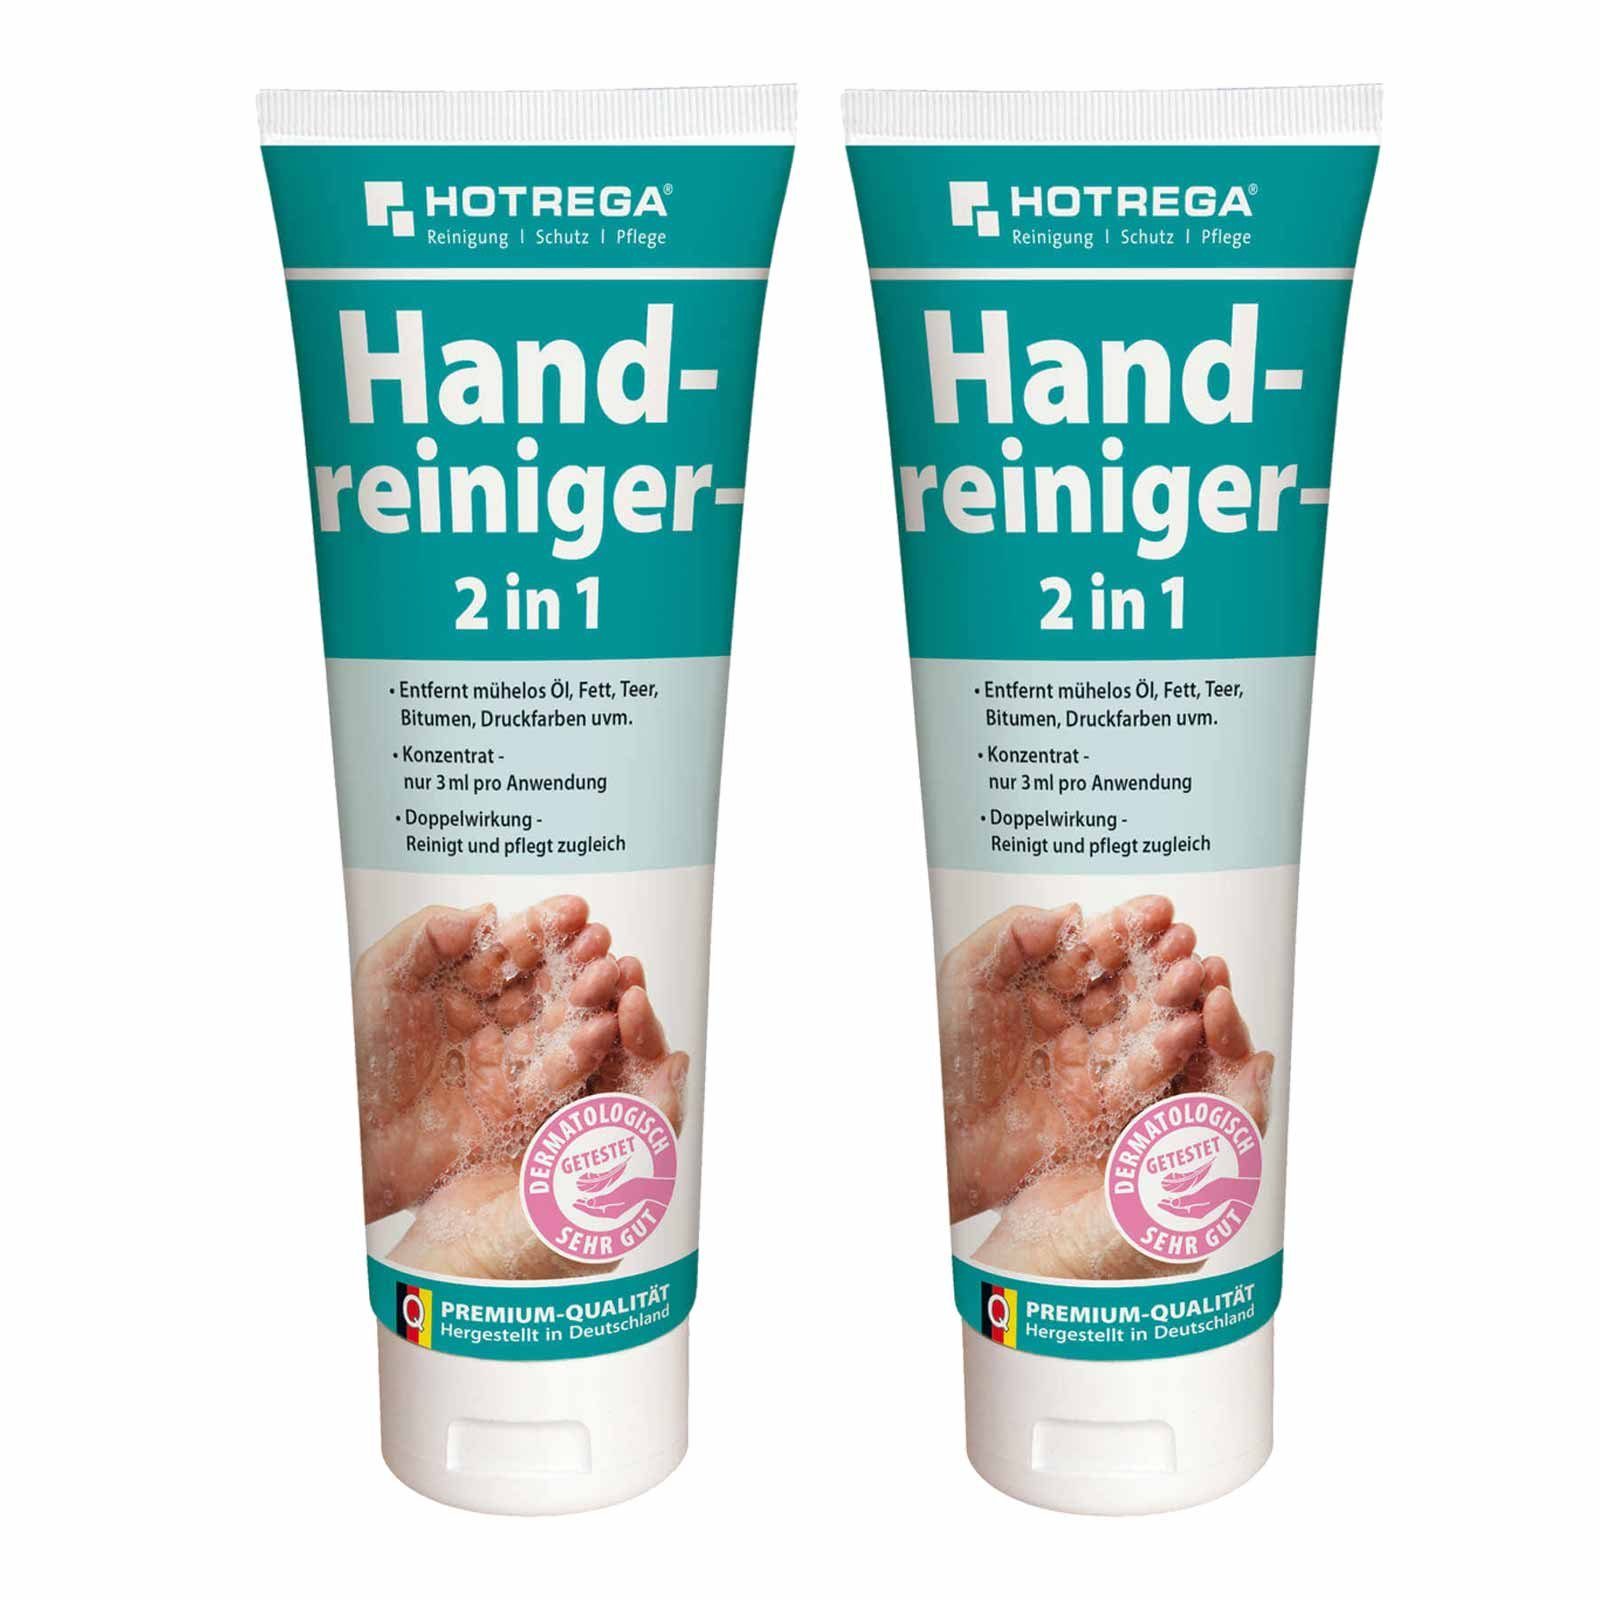 HOTREGA® Handcreme Handreiniger 2x250ml Waschpaste Hautpflege Handwaschpaste Handpflege